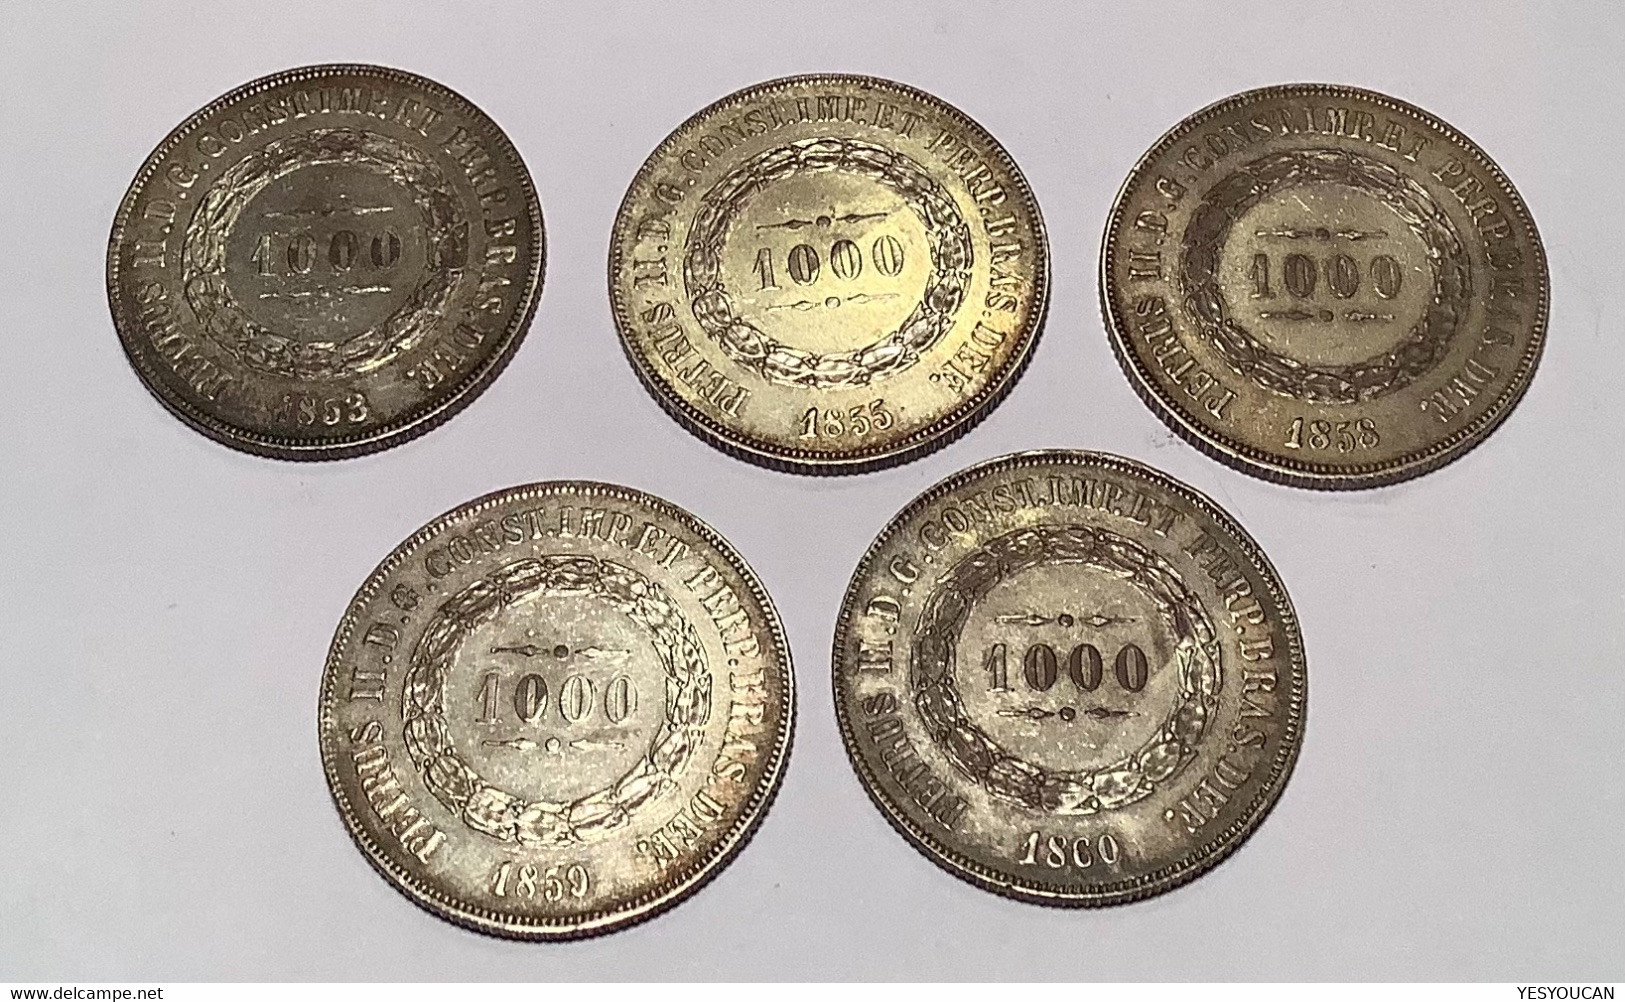 Brazil 1853, 1855, 1858, 1859, 1860 1000 Reis Silver Coin Of Petrus II, ~UNC (Brésil Empire Monnaie D‘ Argent - Brasilien